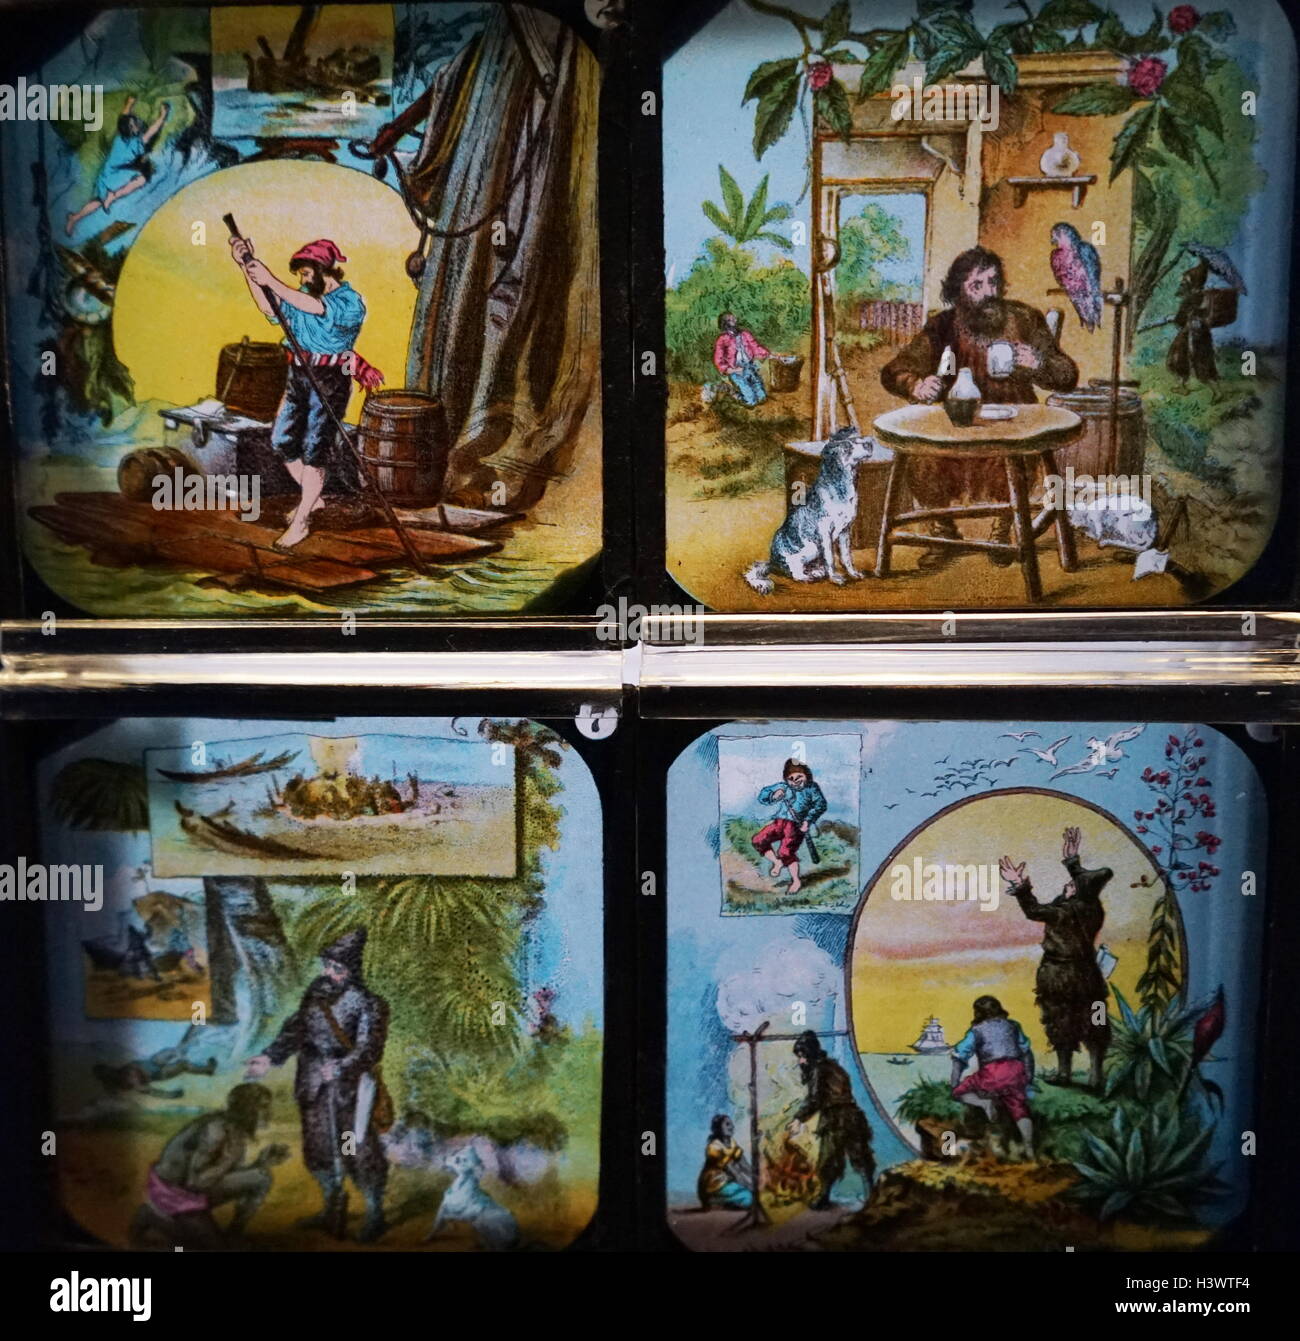 Laterne Rutsche, eine montiert fotografische Transparenz für Projektion durch eine magische Laterne, Darstellung einer Szene aus "Robinson Crusoe" von Daniel Defoe (1660-1731) eine Englische Händler, Schriftsteller, Journalist, pamphleteer, und Spion. Vom 19. Jahrhundert. Stockfoto